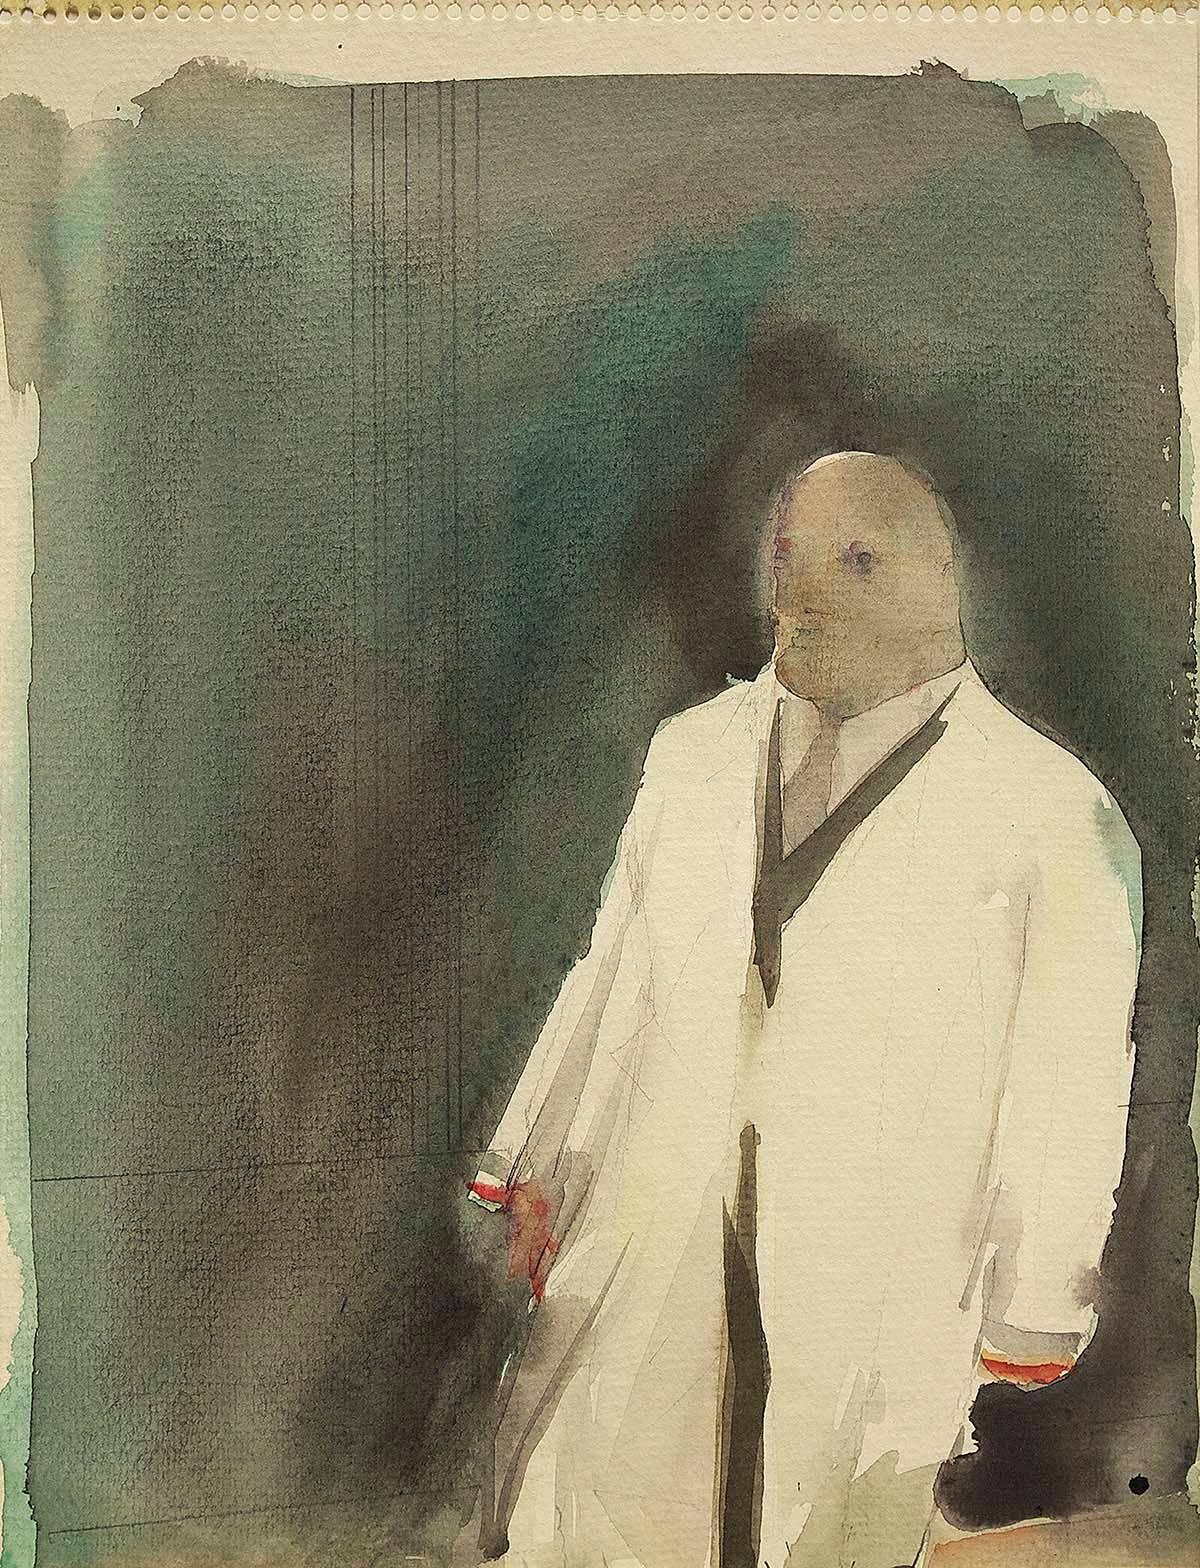 Man in Raincoat, Vintage Modern Watercolor Painting - Art by John Dobbs